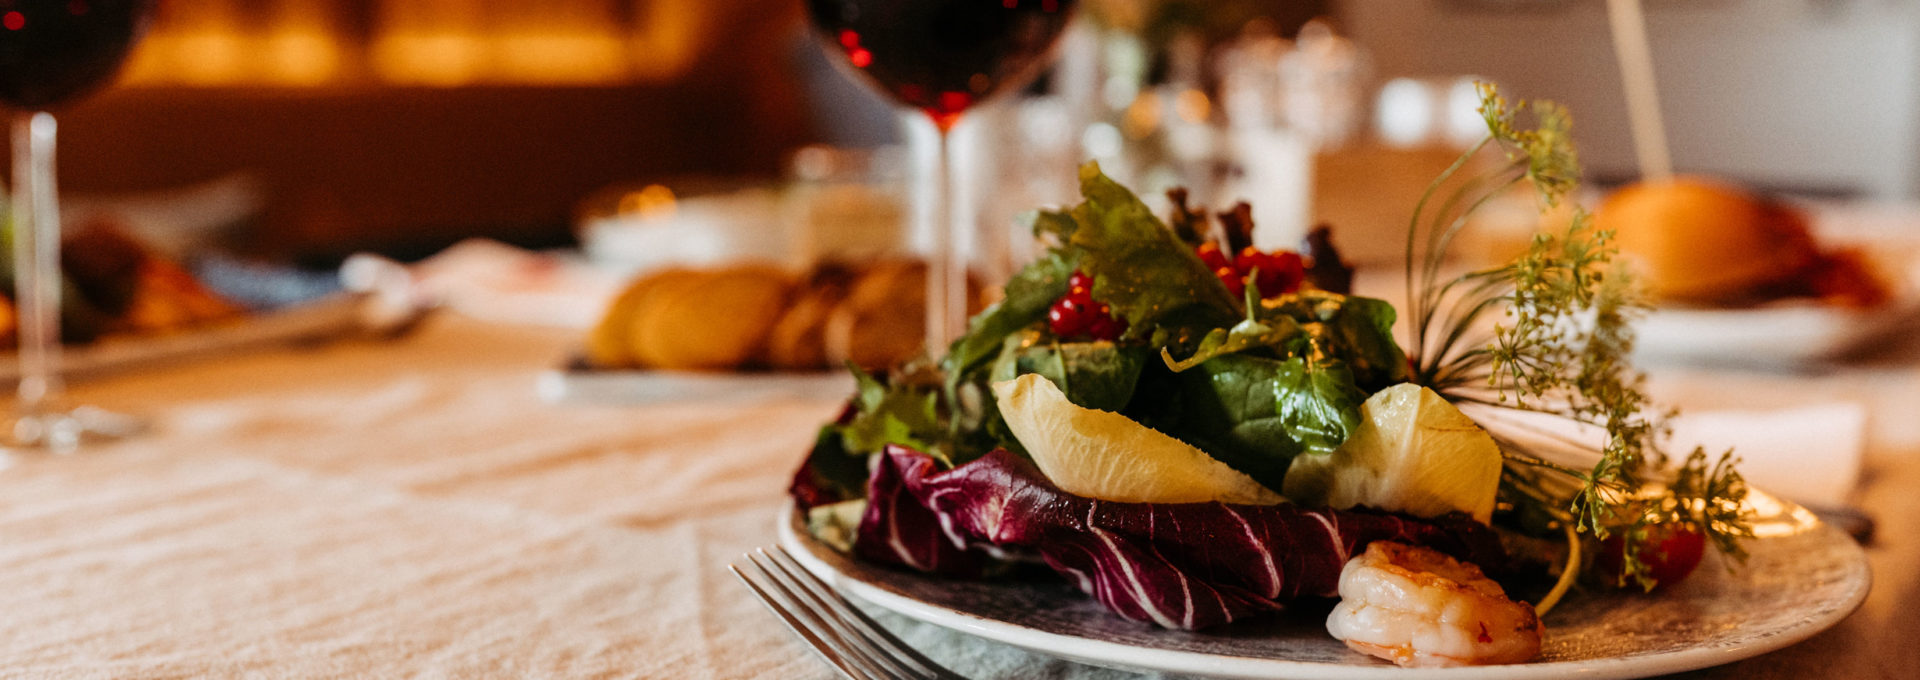 Hergerichteter Salat mit Rotwein